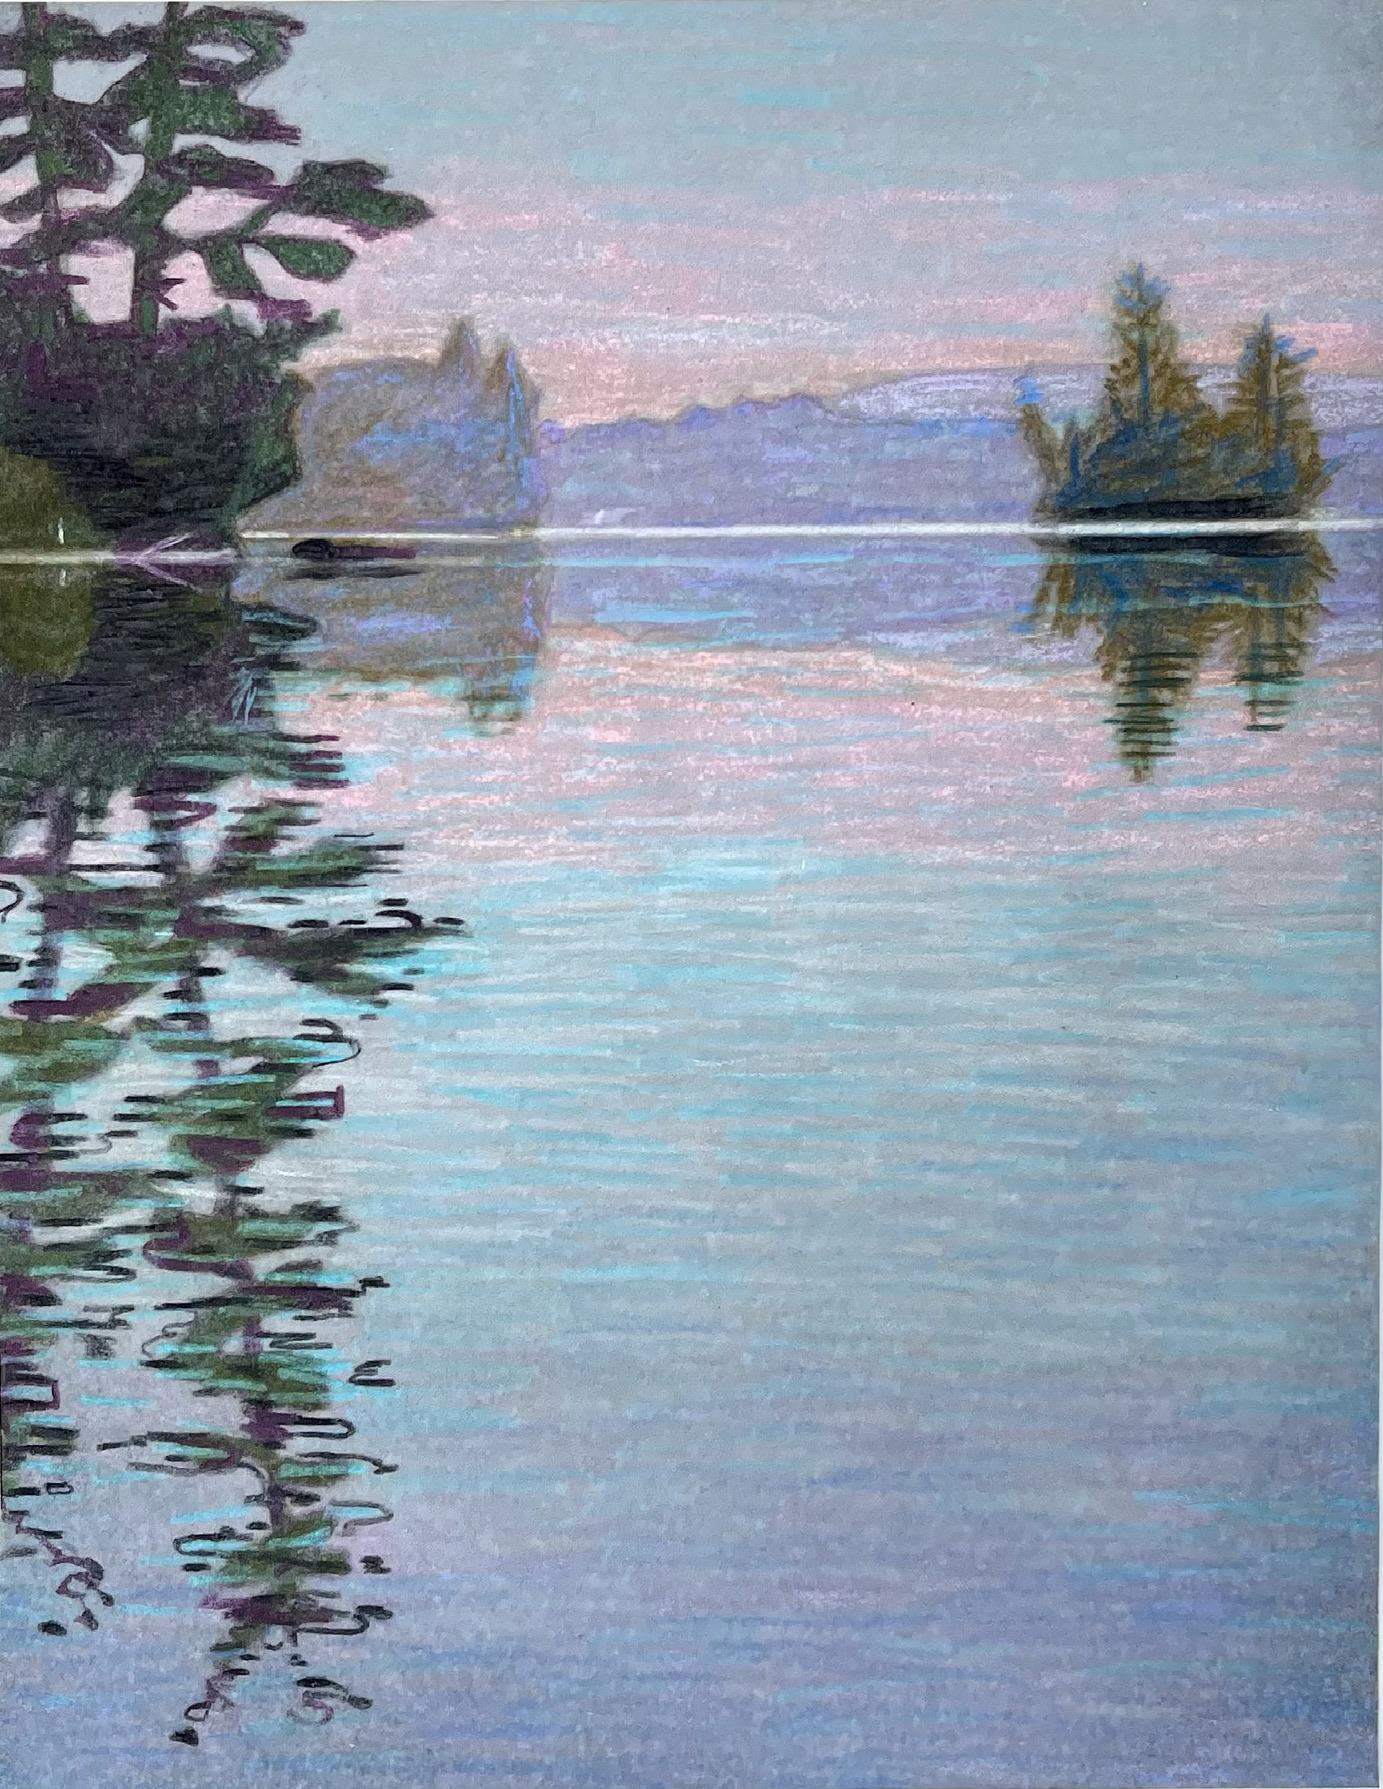 Lake 3 (kayak), dessin de paysage post-impressionniste